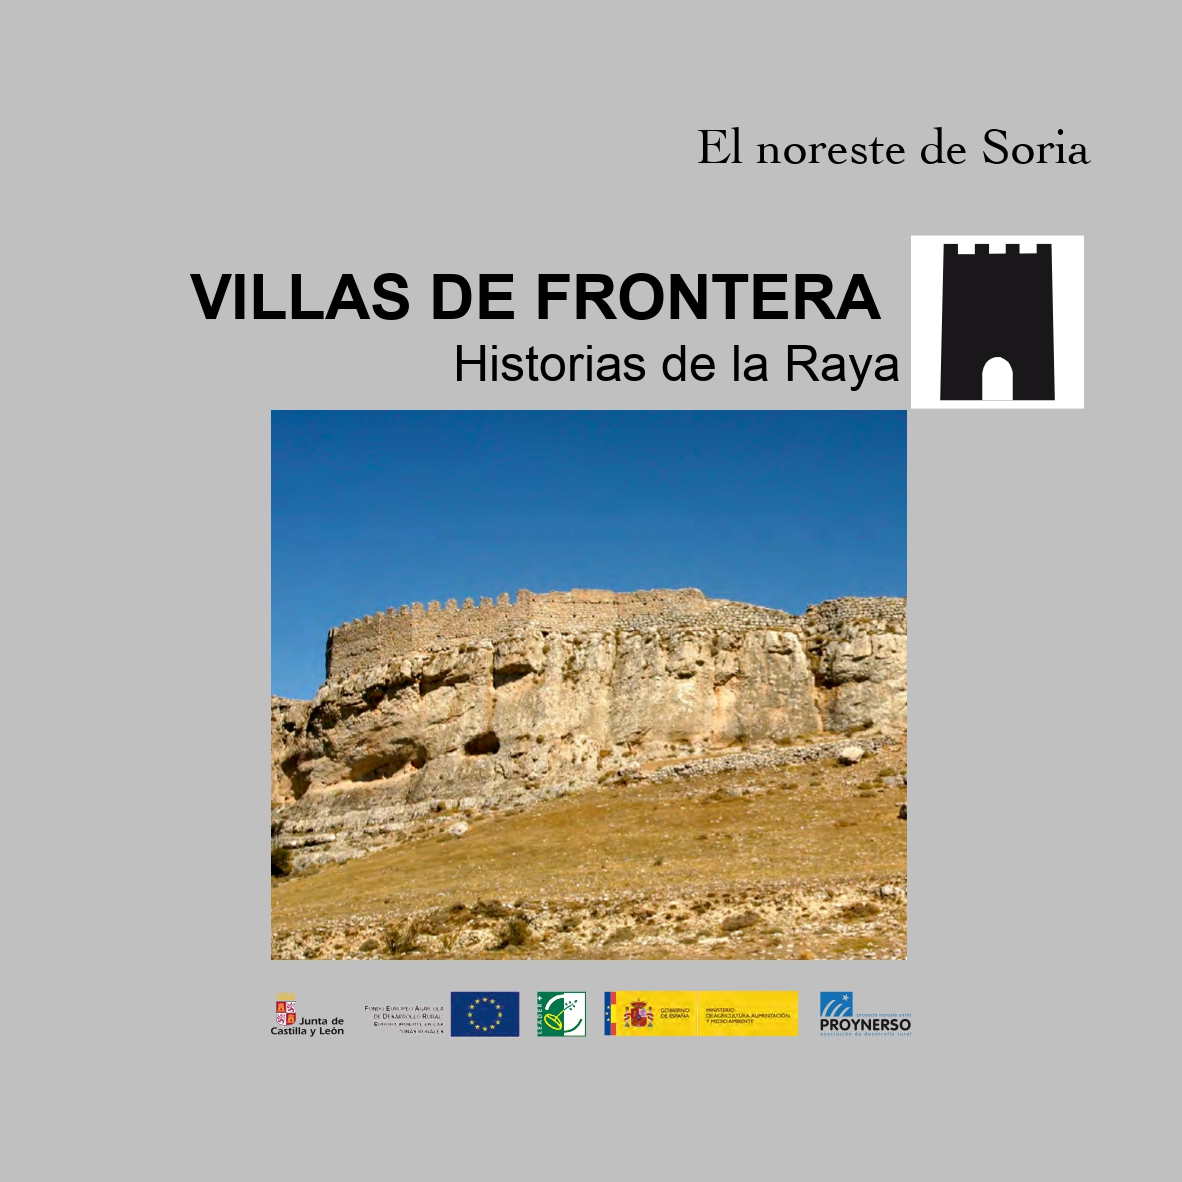 Villas de Frontera
Historias de la Raya